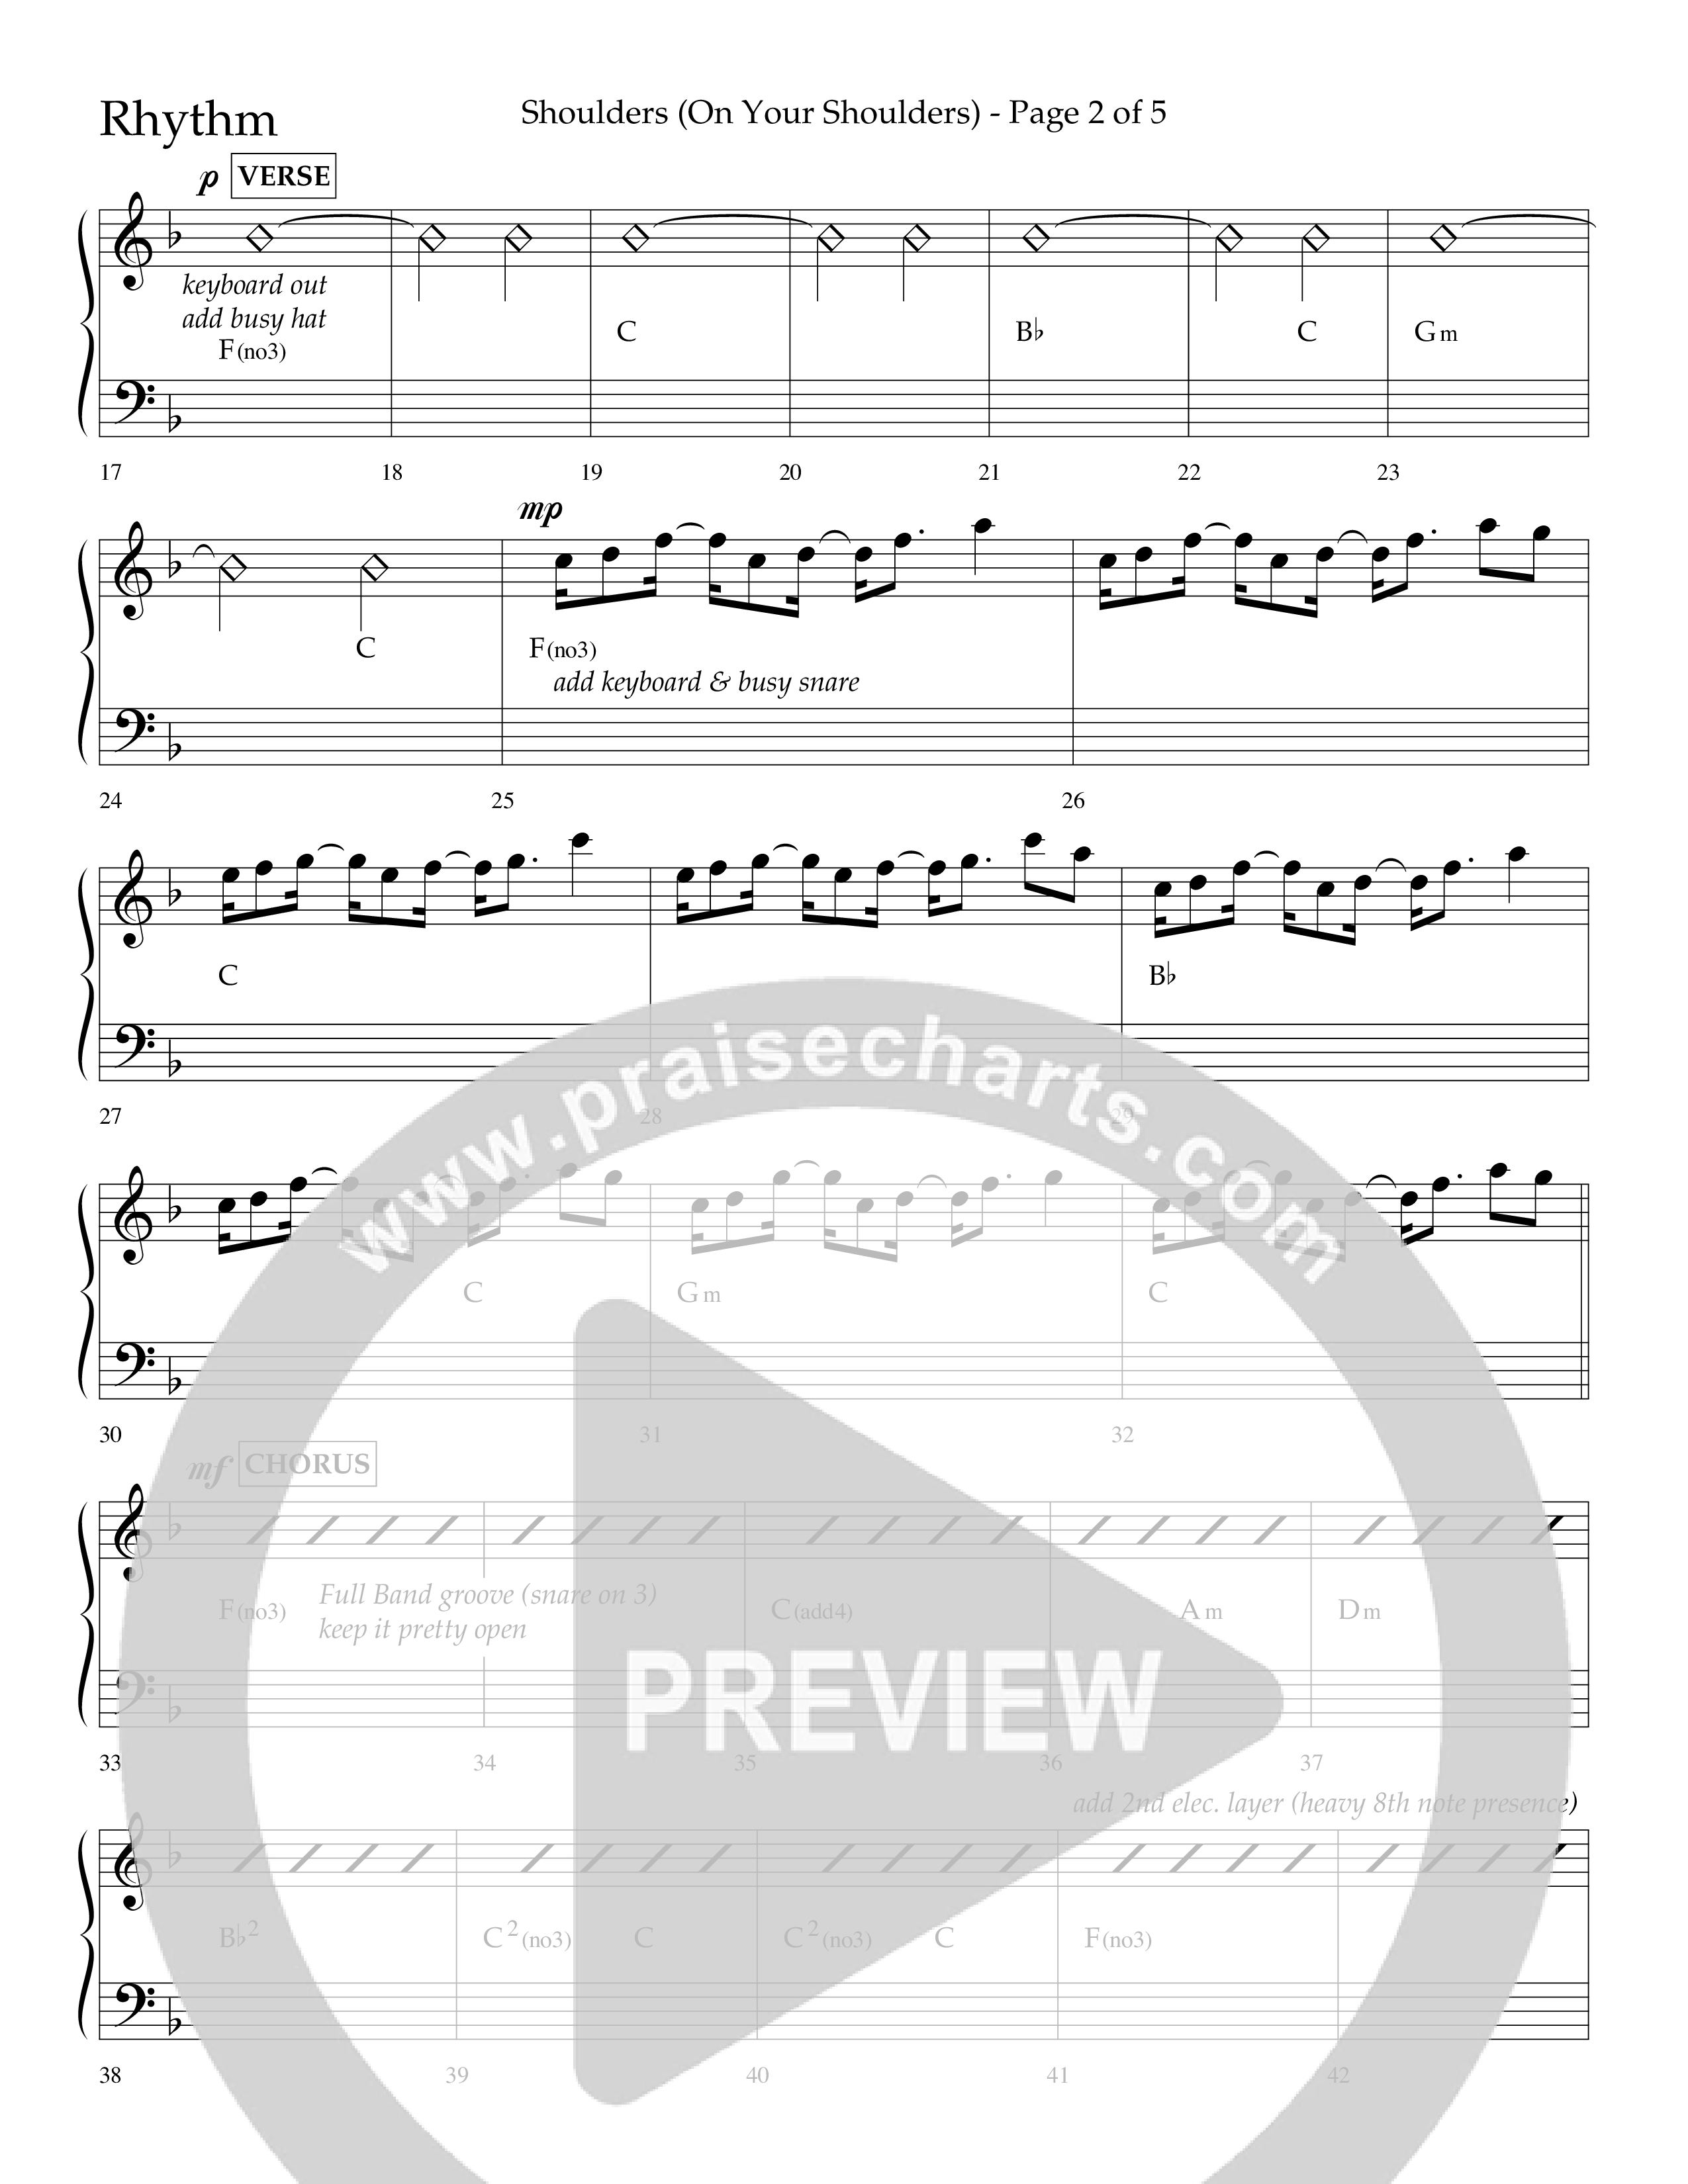 Shoulders (Choral Anthem SATB) Lead Melody & Rhythm (Lifeway Choral / Arr. Cliff Duren)